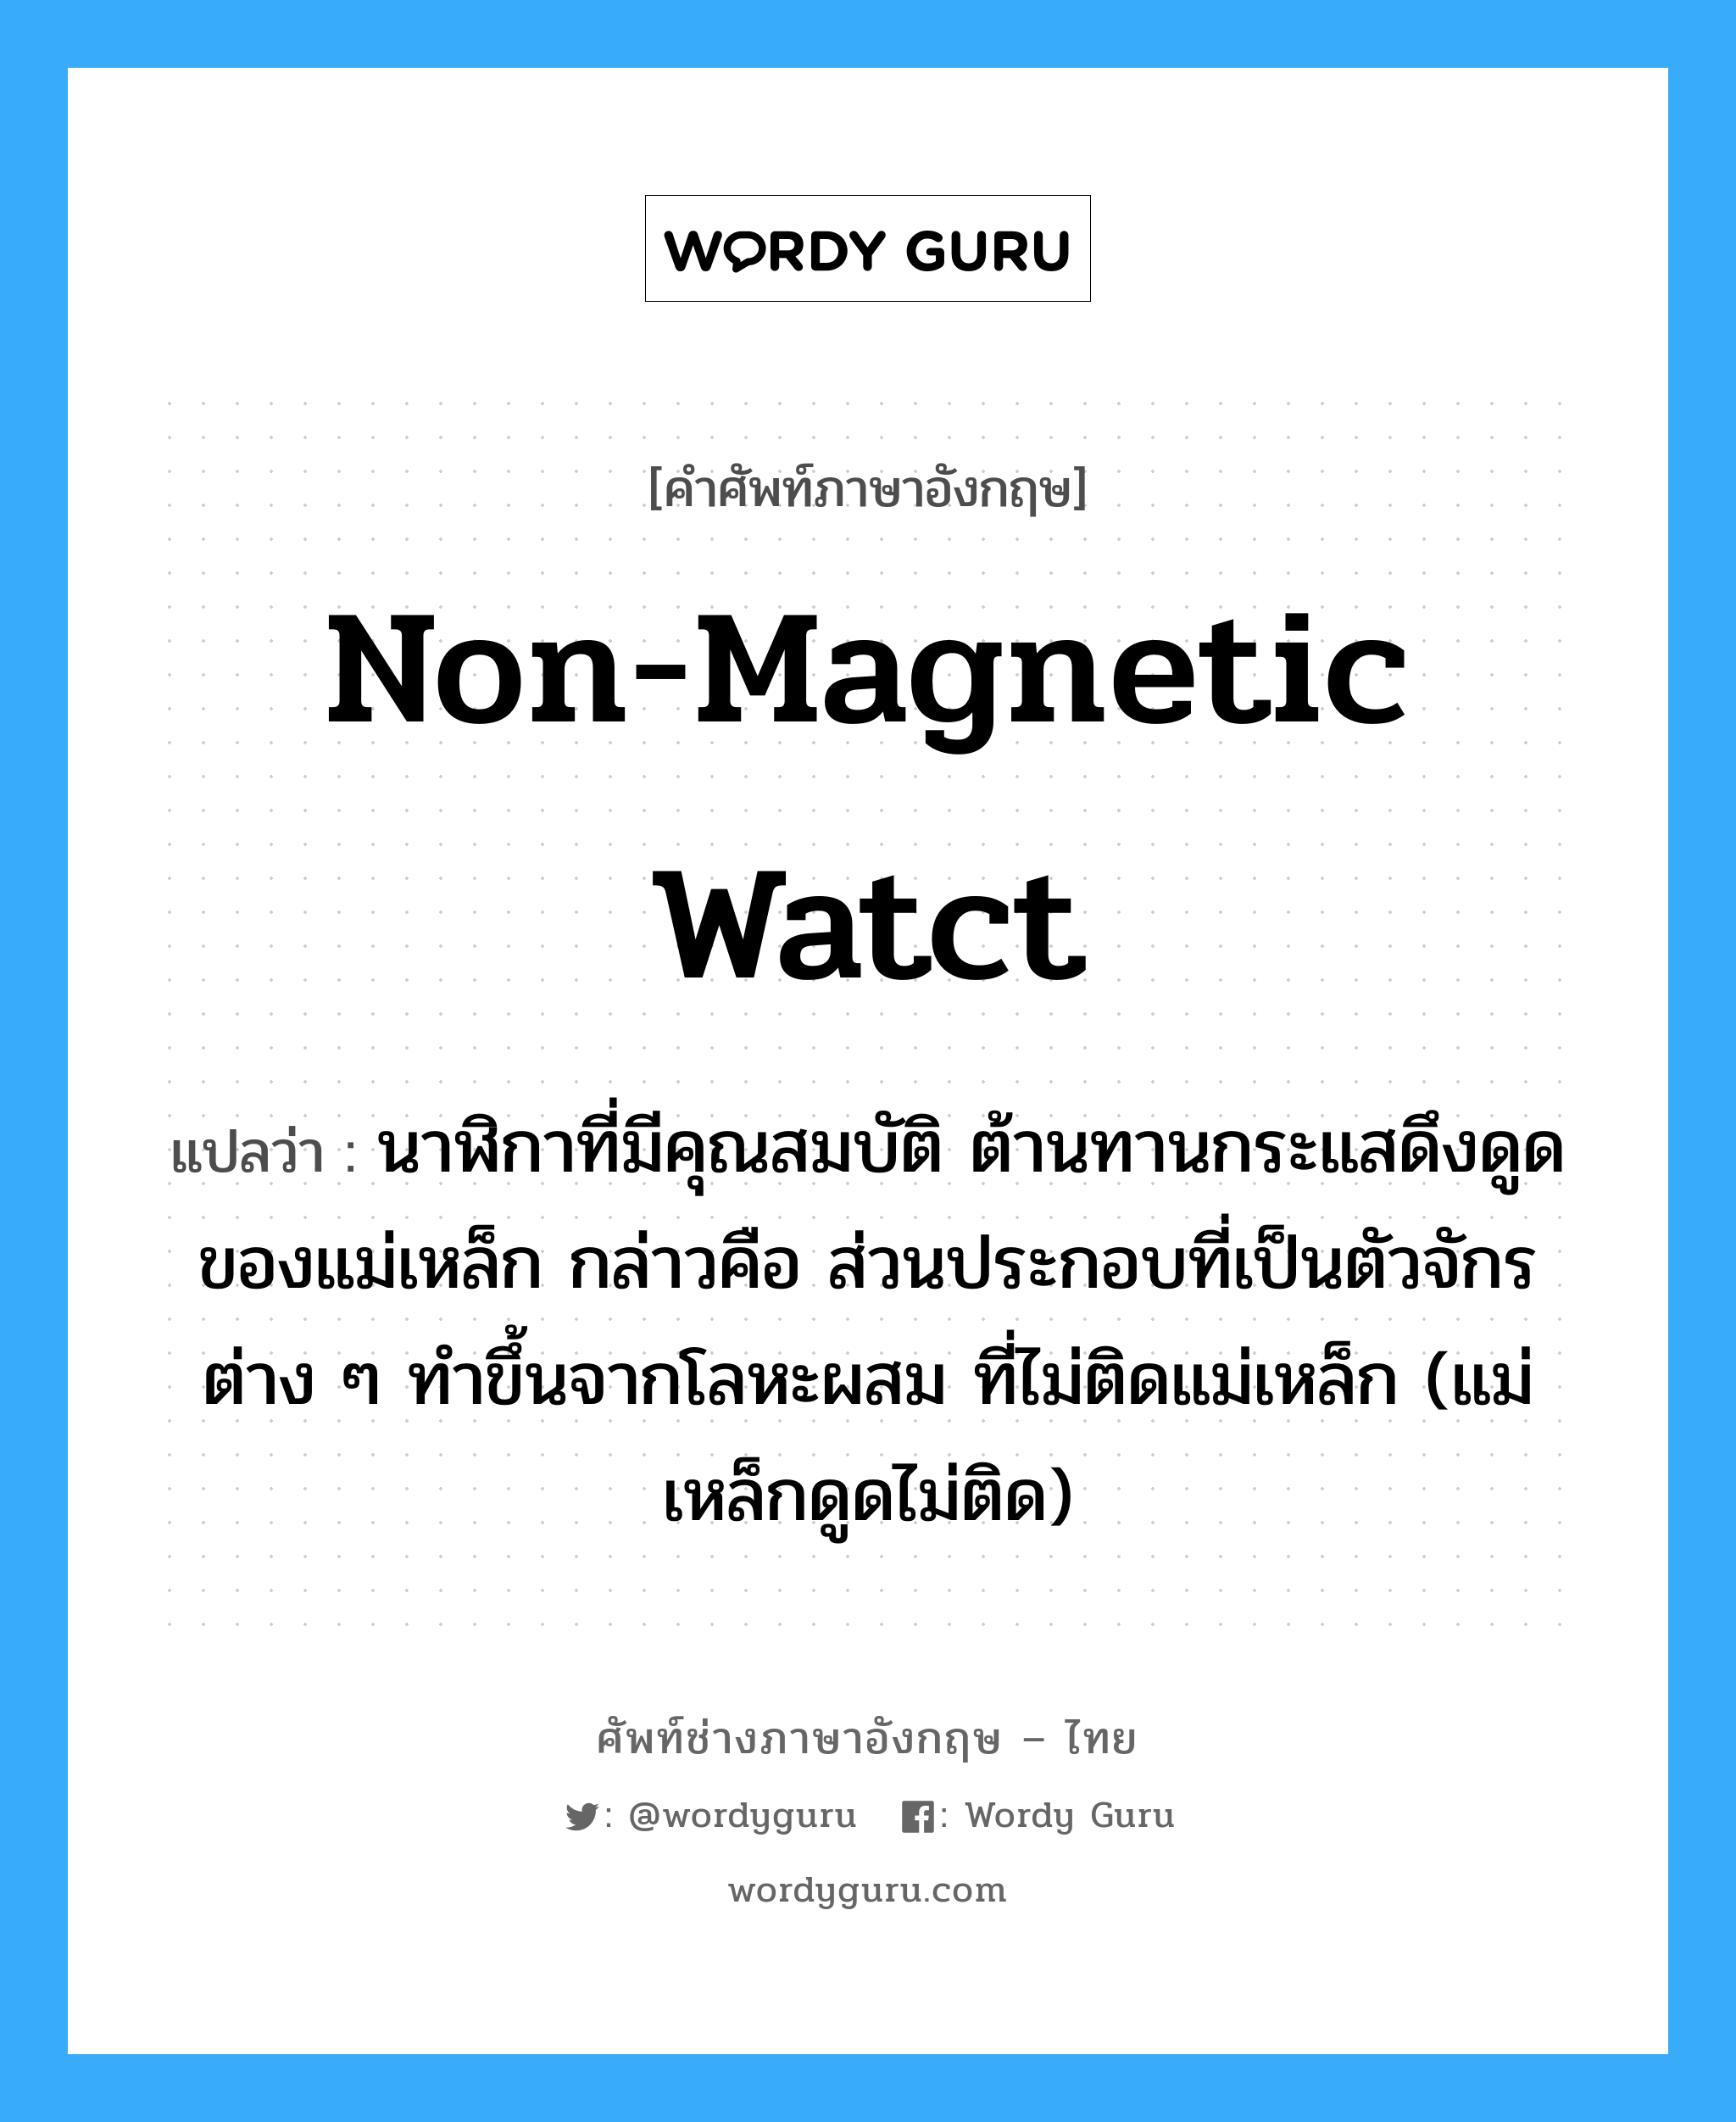 non-magnetic watct แปลว่า?, คำศัพท์ช่างภาษาอังกฤษ - ไทย non-magnetic watct คำศัพท์ภาษาอังกฤษ non-magnetic watct แปลว่า นาฬิกาที่มีคุณสมบัติ ต้านทานกระแสดึงดูดของแม่เหล็ก กล่าวคือ ส่วนประกอบที่เป็นตัวจักรต่าง ๆ ทำขึ้นจากโลหะผสม ที่ไม่ติดแม่เหล็ก (แม่เหล็กดูดไม่ติด)